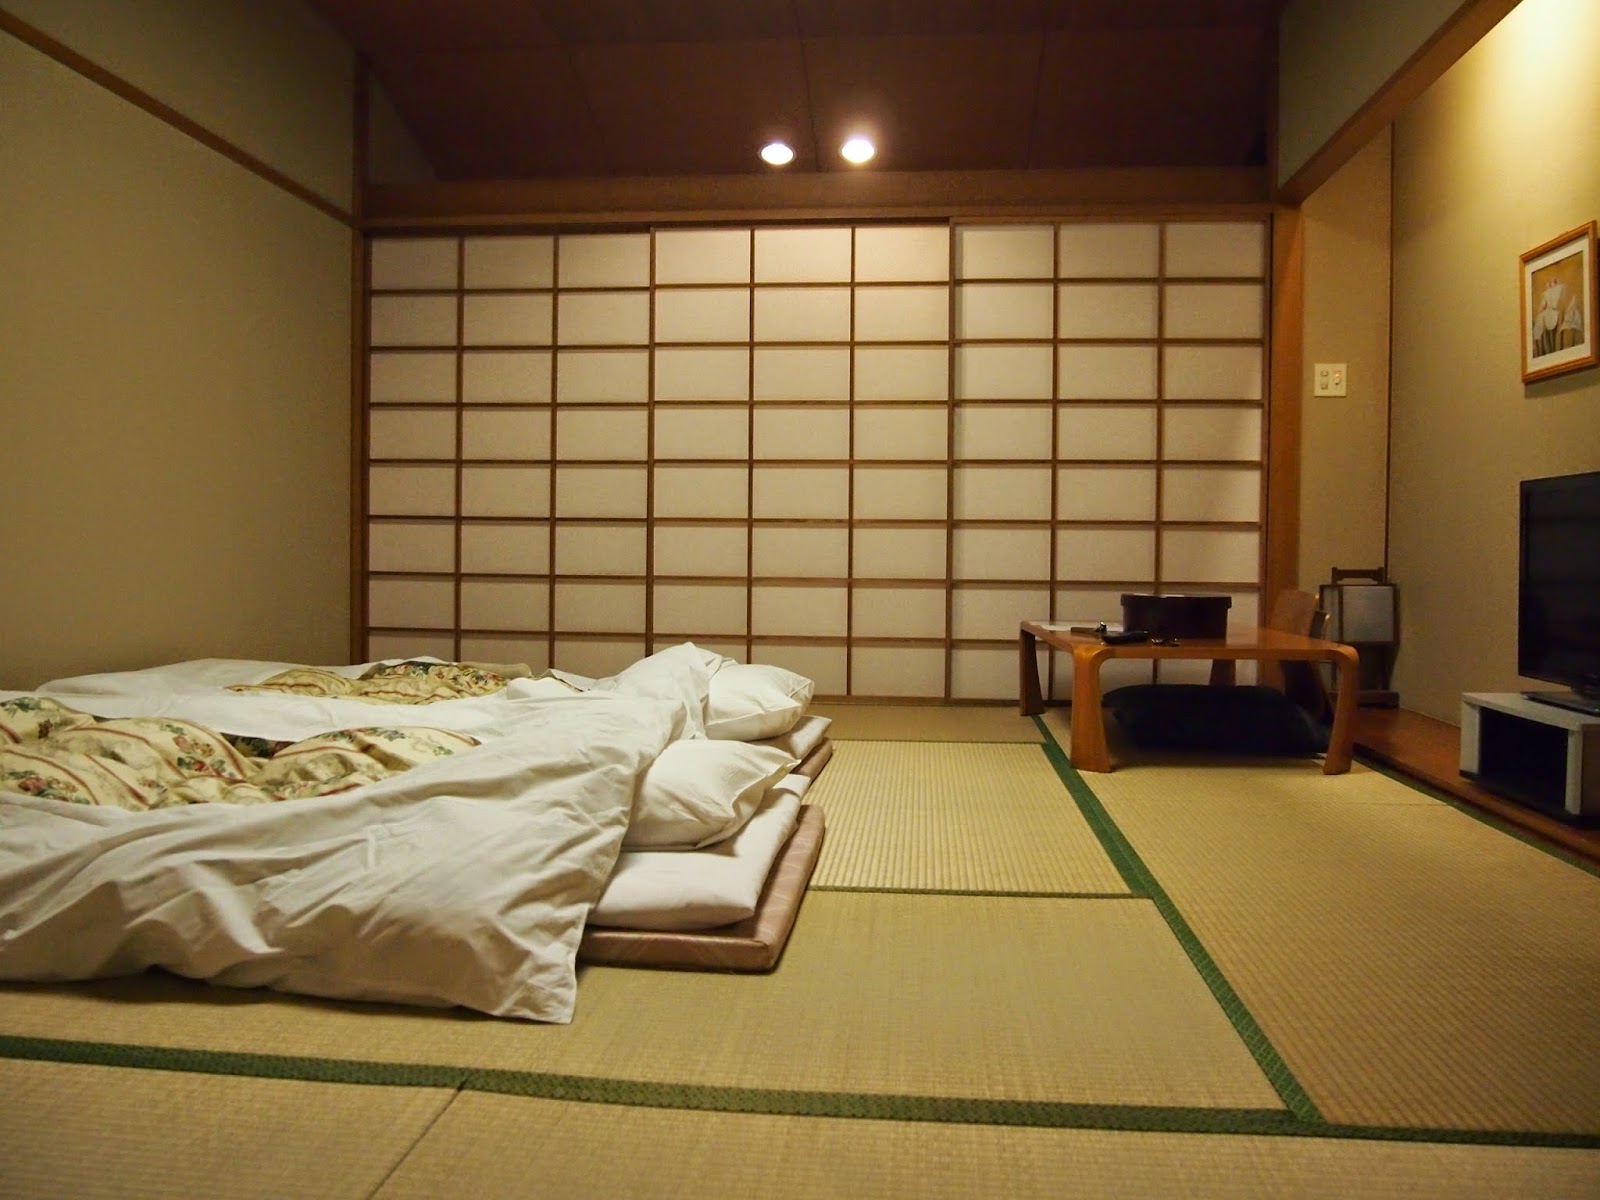 ภาพถ่ายภายในห้องนอนสไตล์ญี่ปุ่น